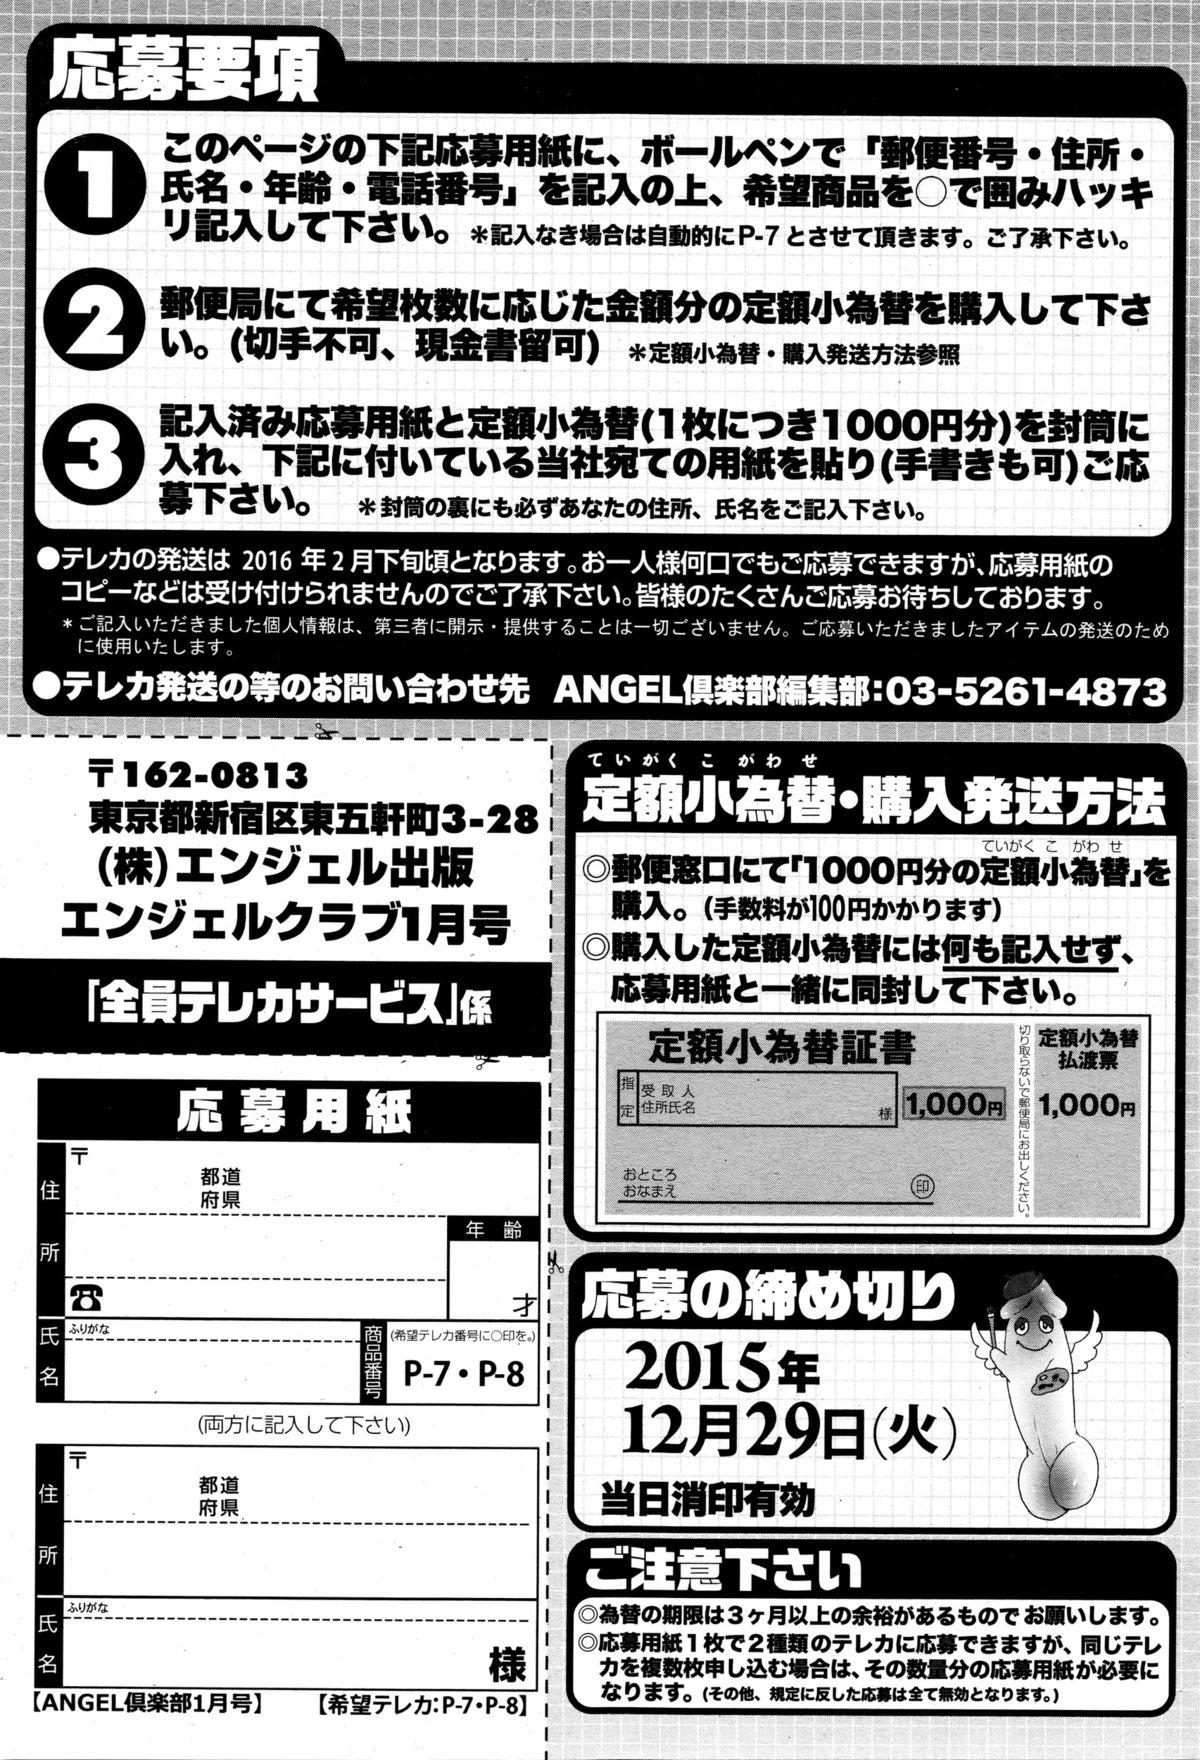 ANGEL Club 2016-01 206